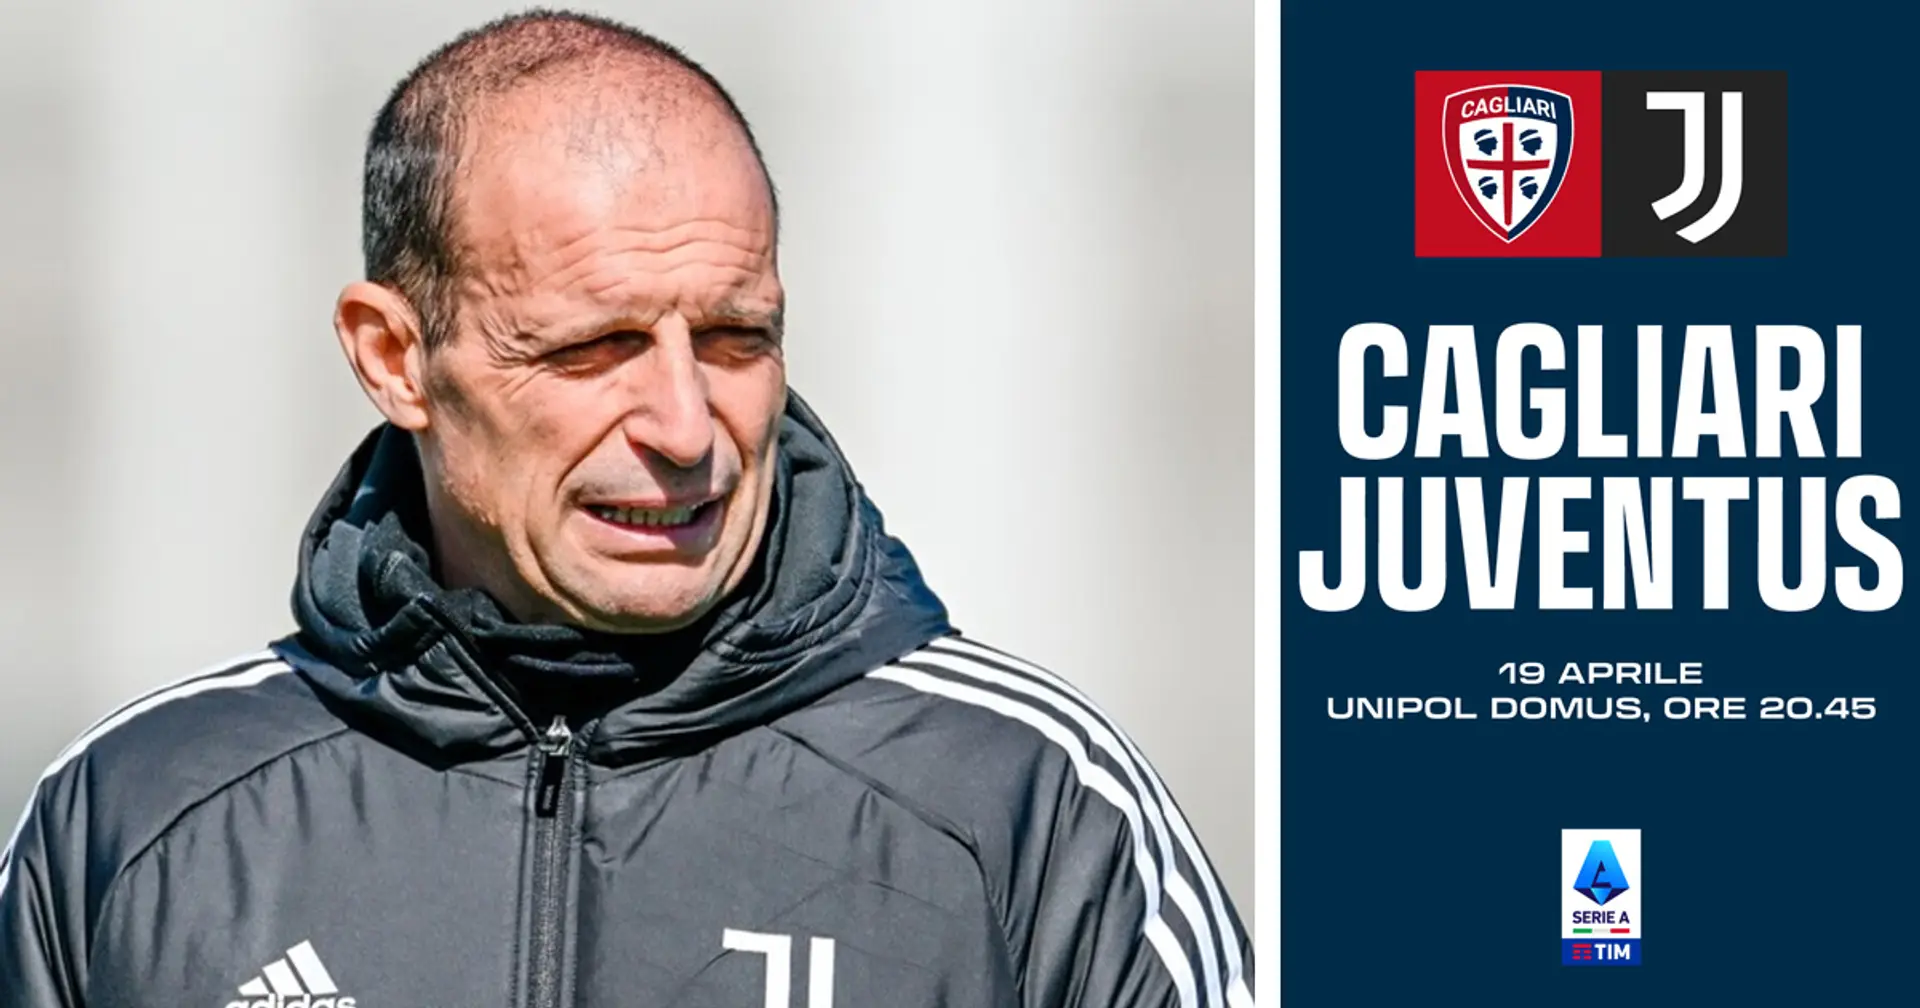 1 recupero e 2 assenze: le ultime novità dall'allenamento in vista di Cagliari-Juventus